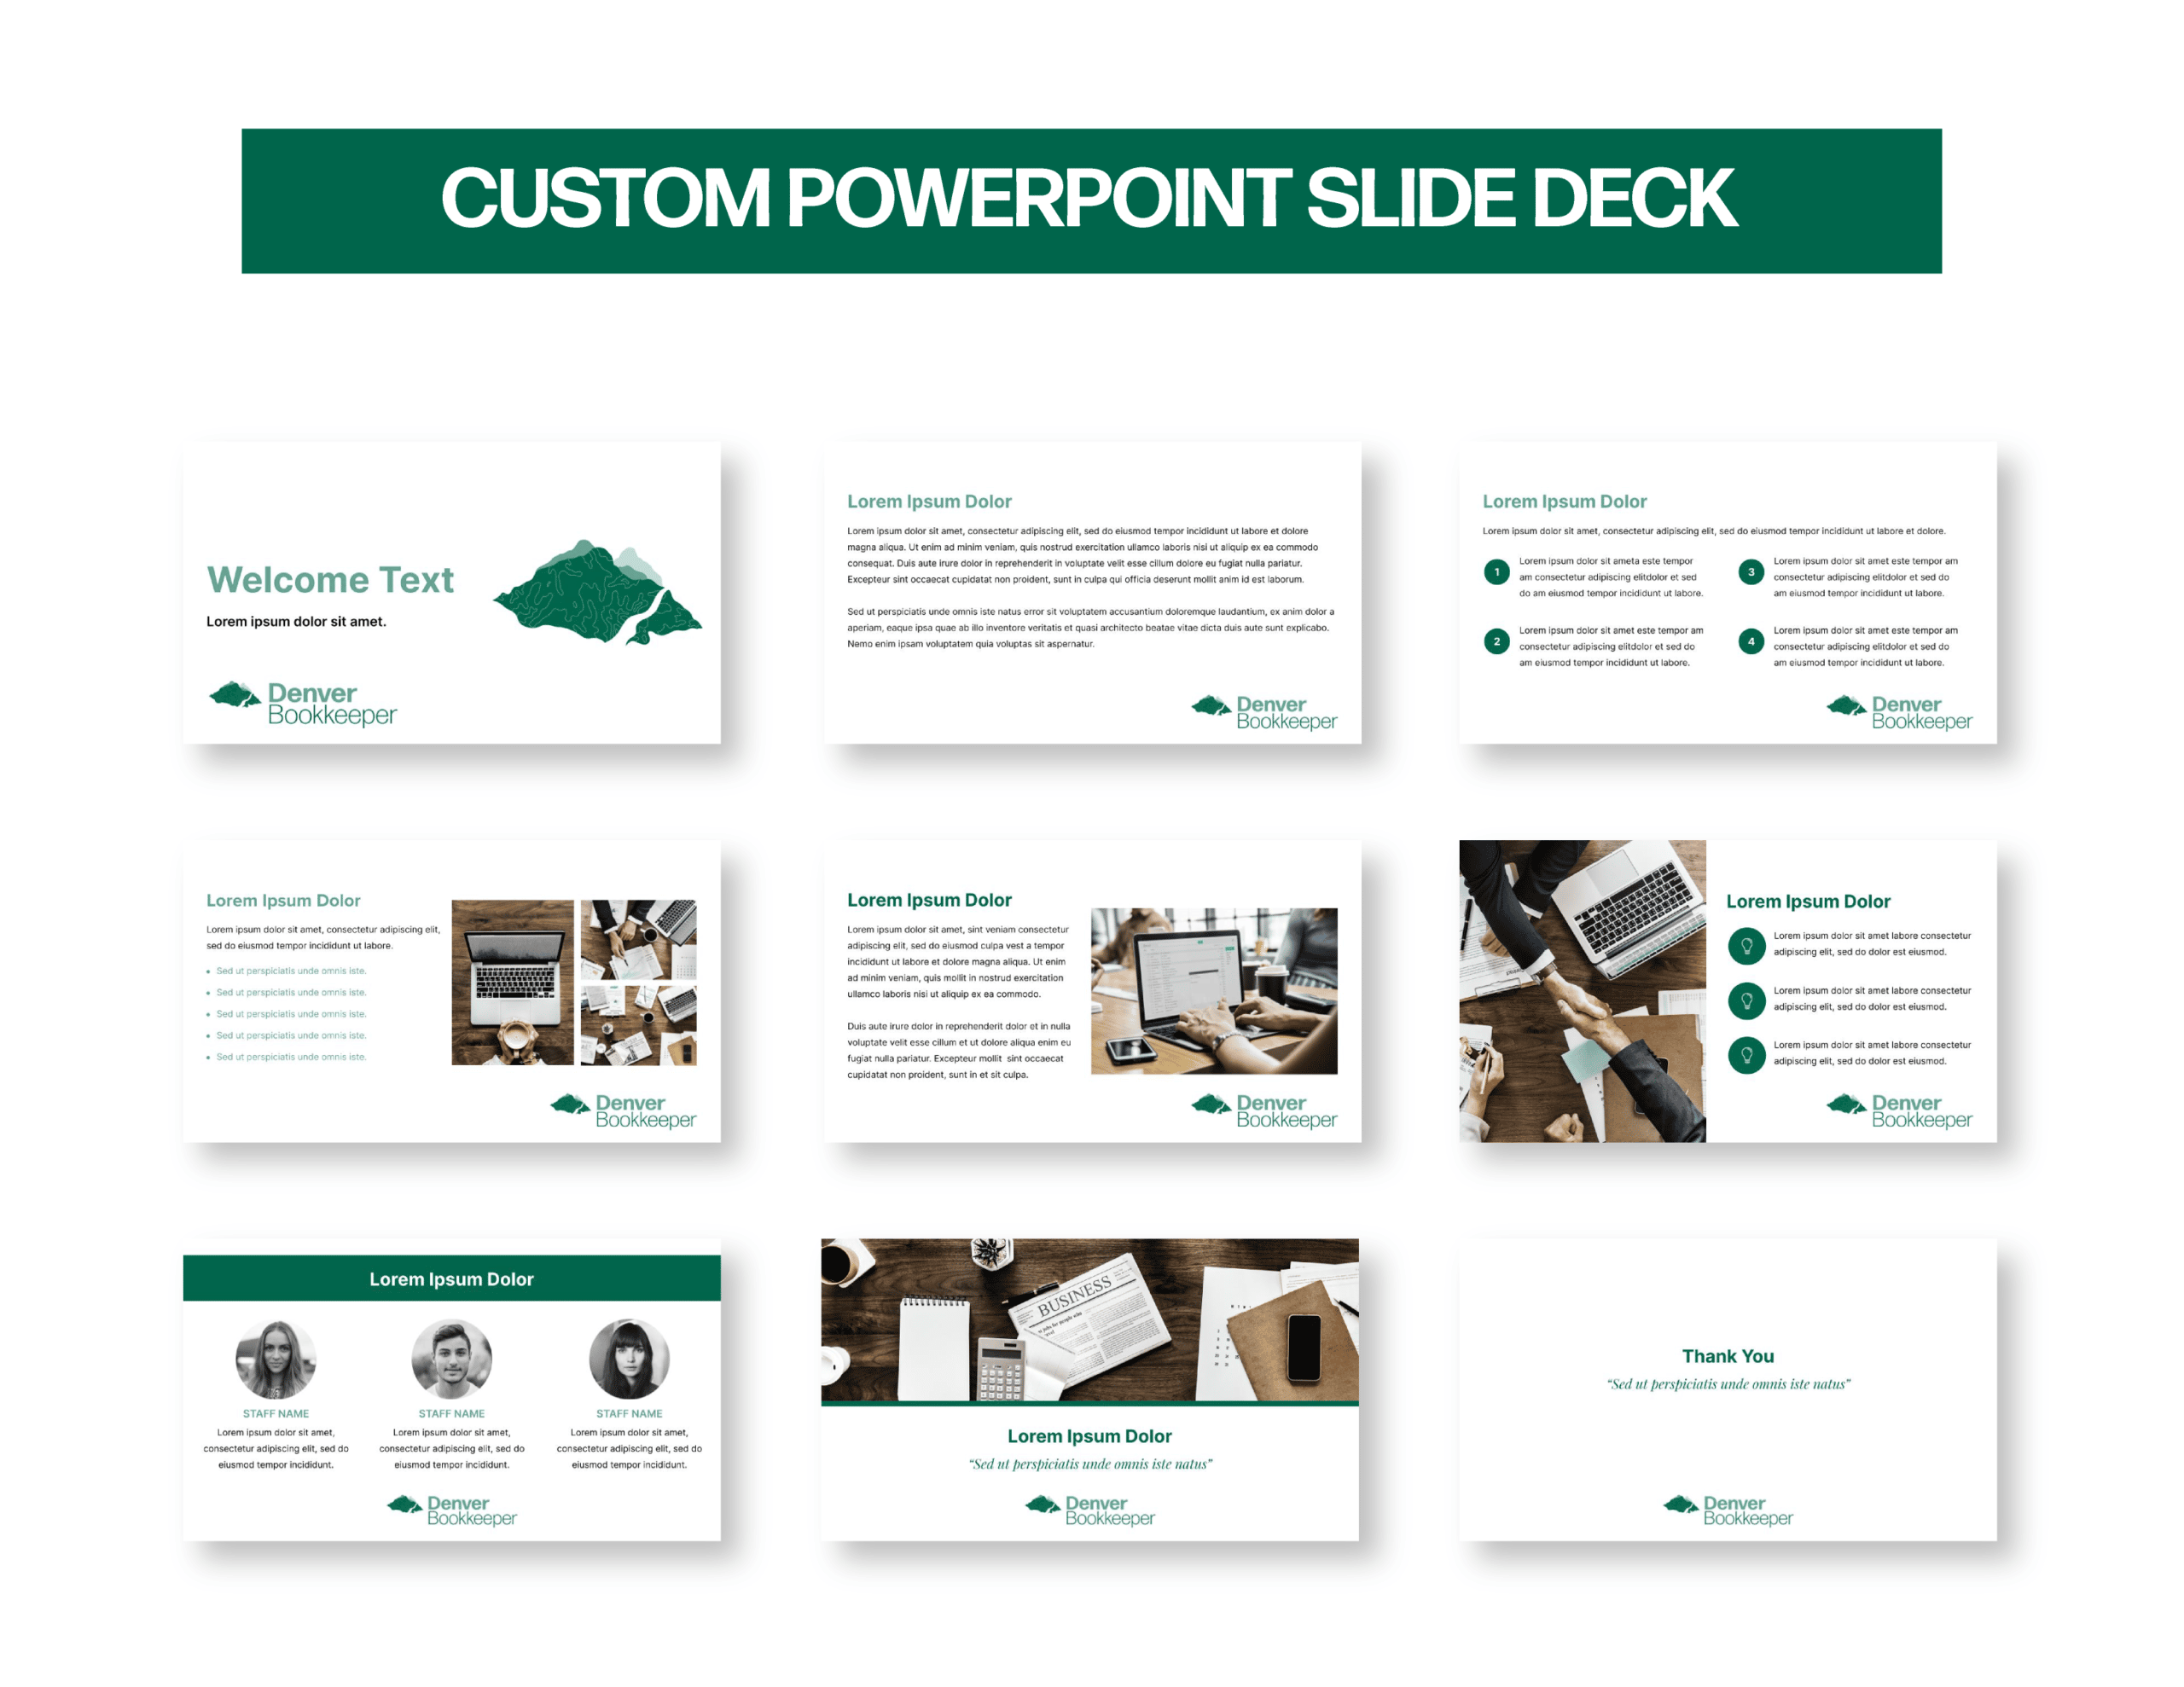 05Denver_Showcase_Custom PowerPoint Slide Deck